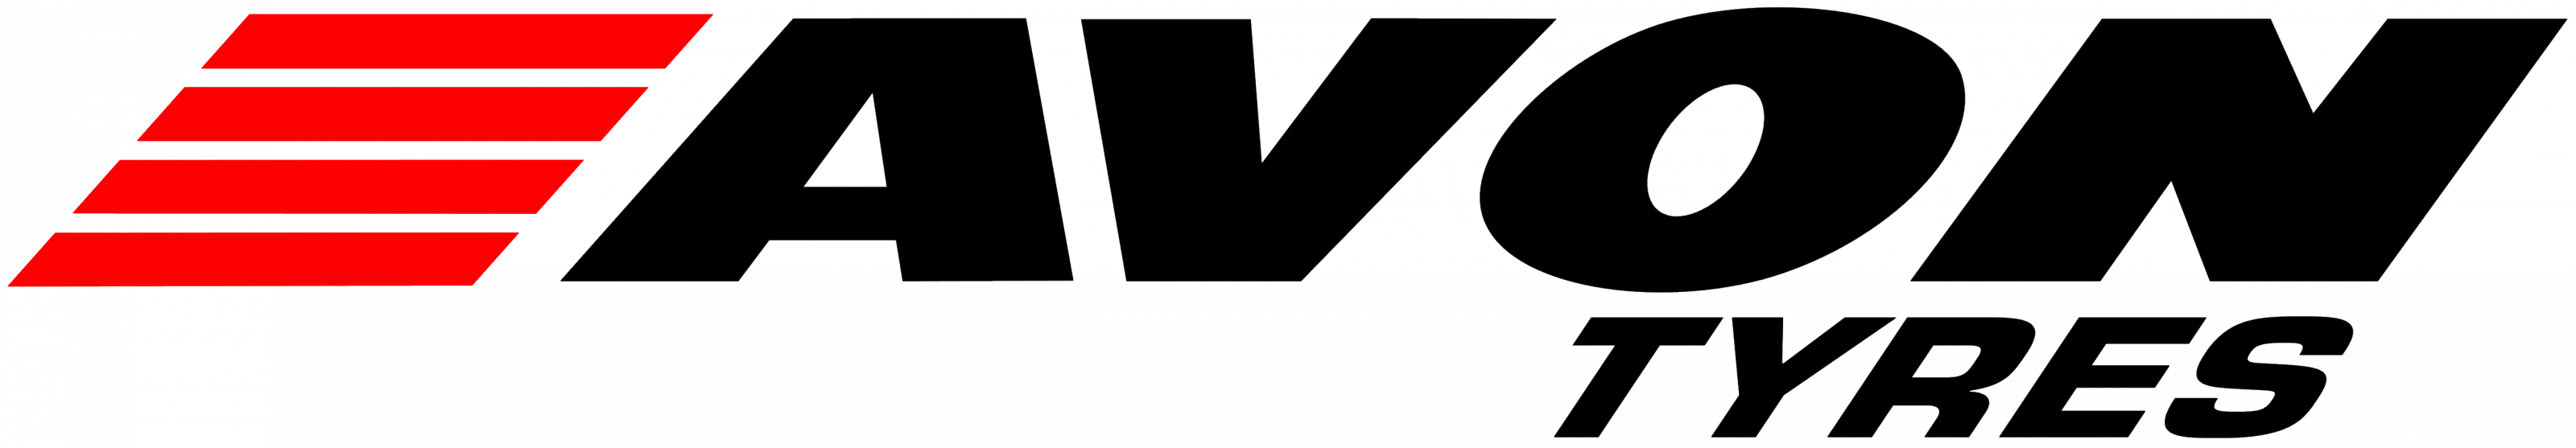 Логотип AVON